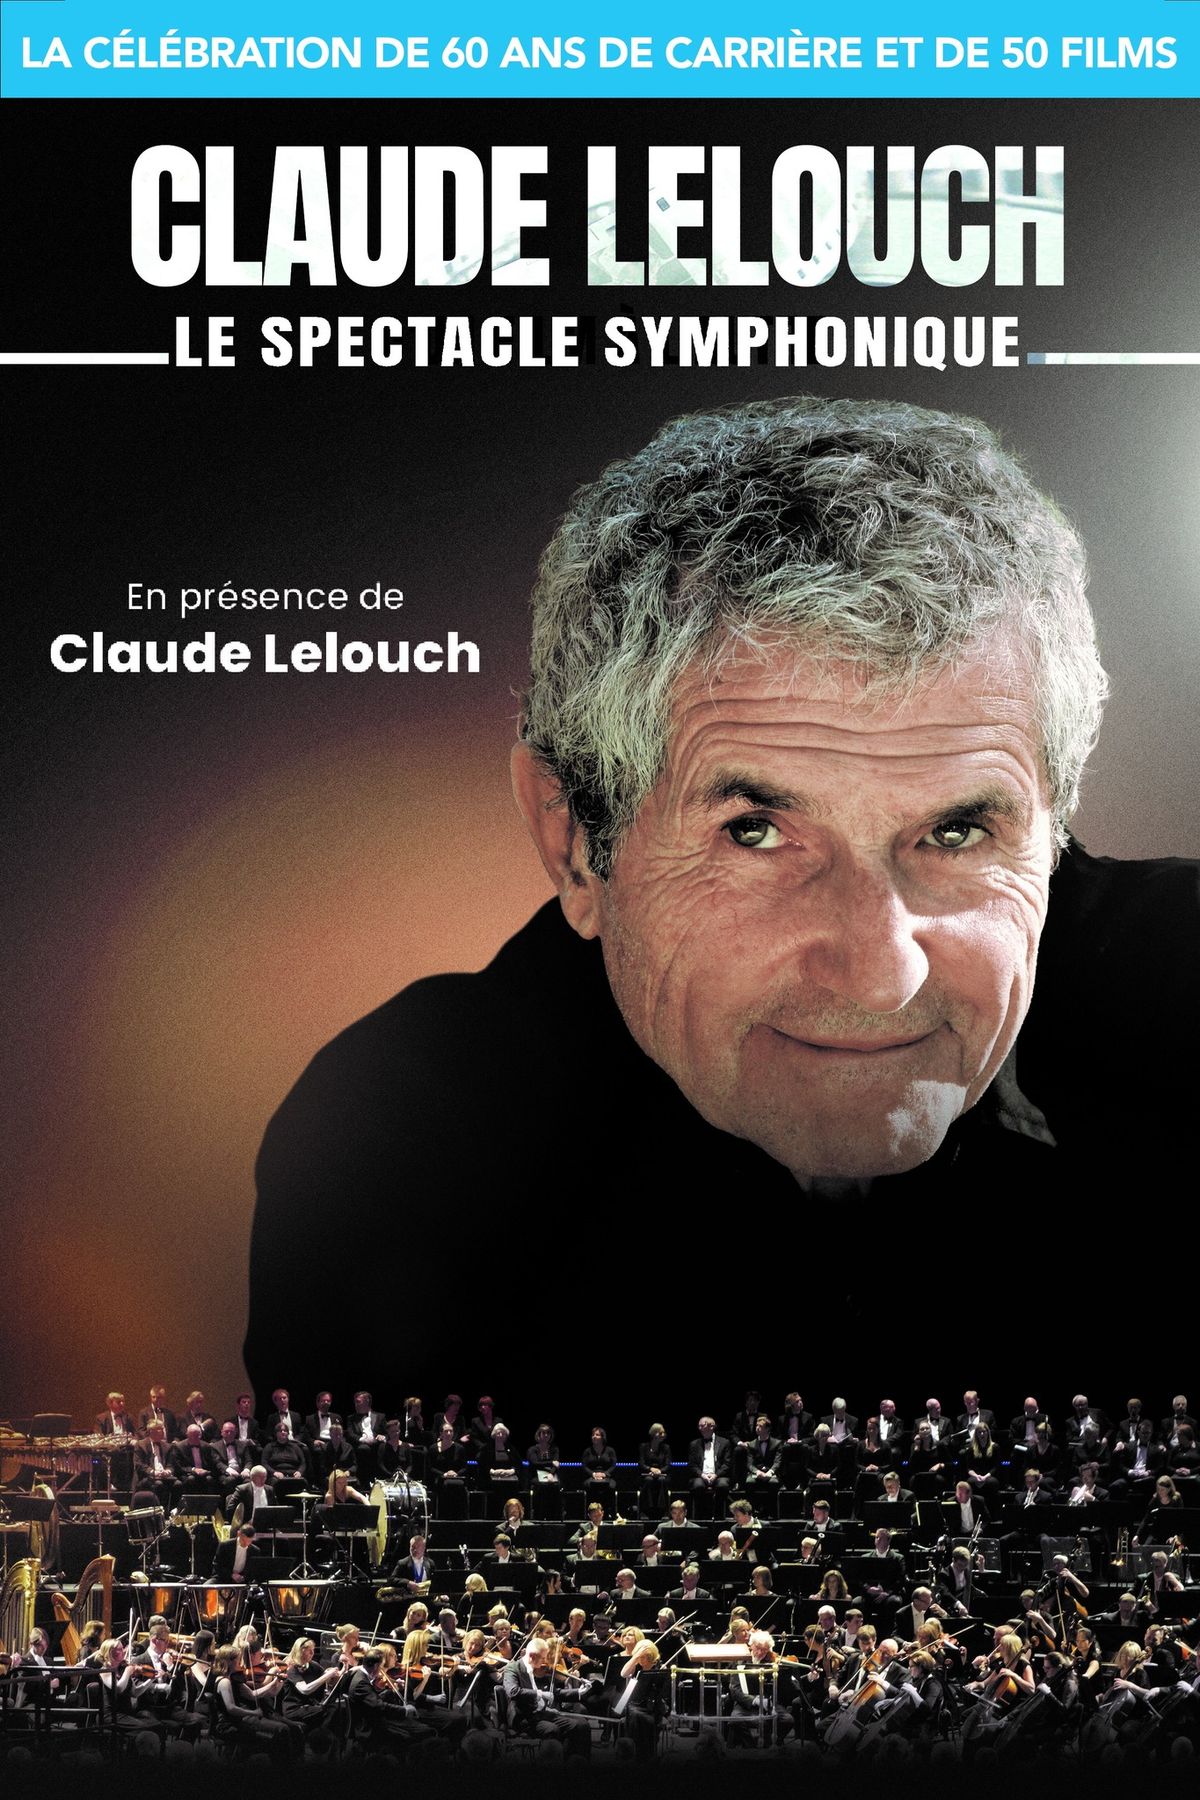 CLAUDE LELOUCH LE SYMPHONIQUE - ROUEN [DATE REPORT]